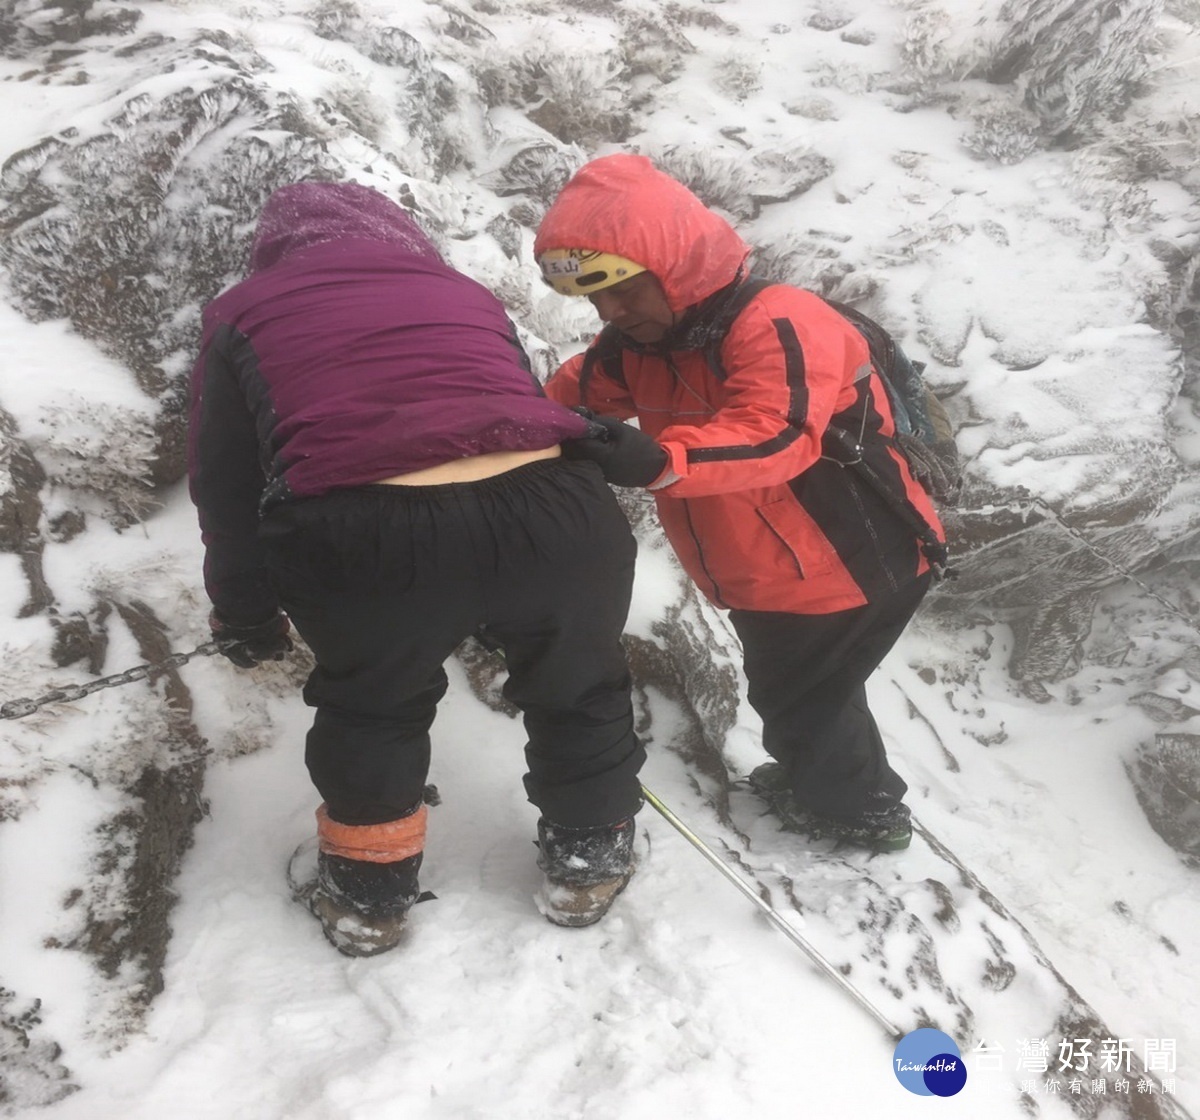 救難人員陪同迷路山友在積雪中一步一步艱難的下山情況〈圖片/玉管處提供〉